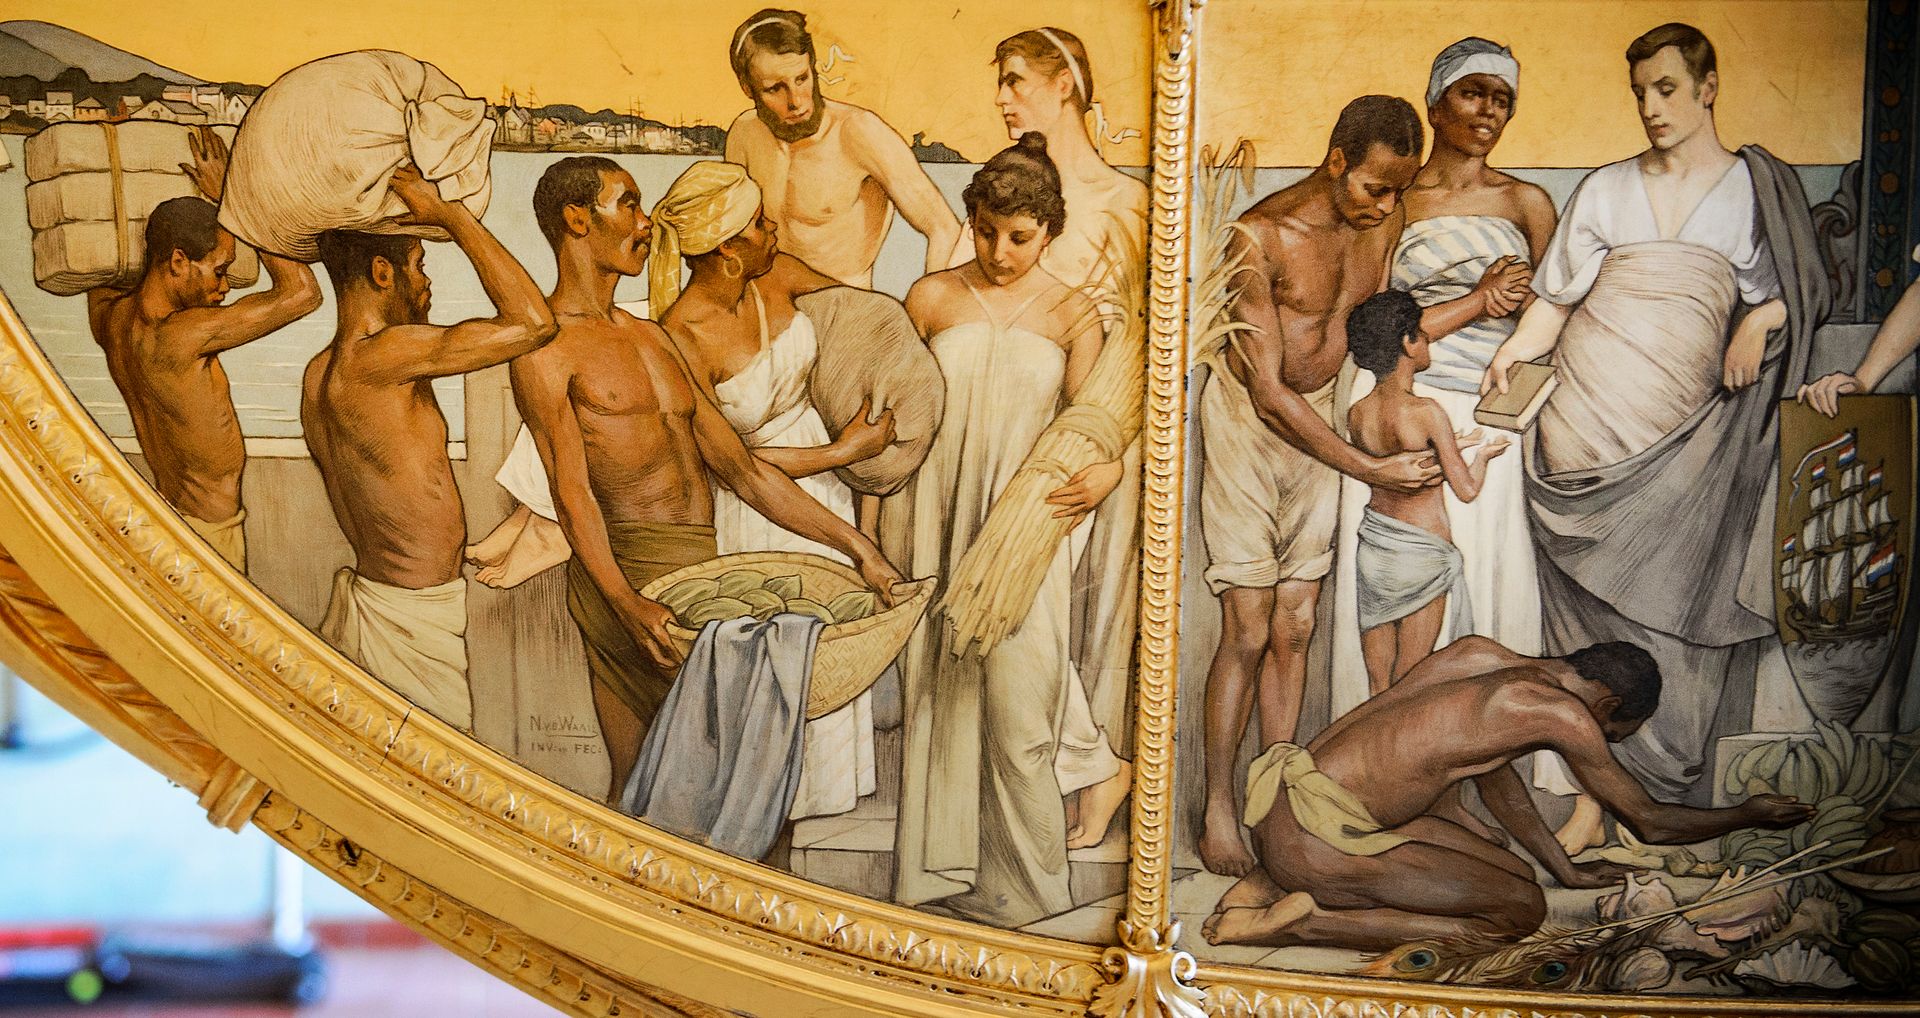 Afbeeldingen van knielende slaven op de zijkant van de Gouden Koets.